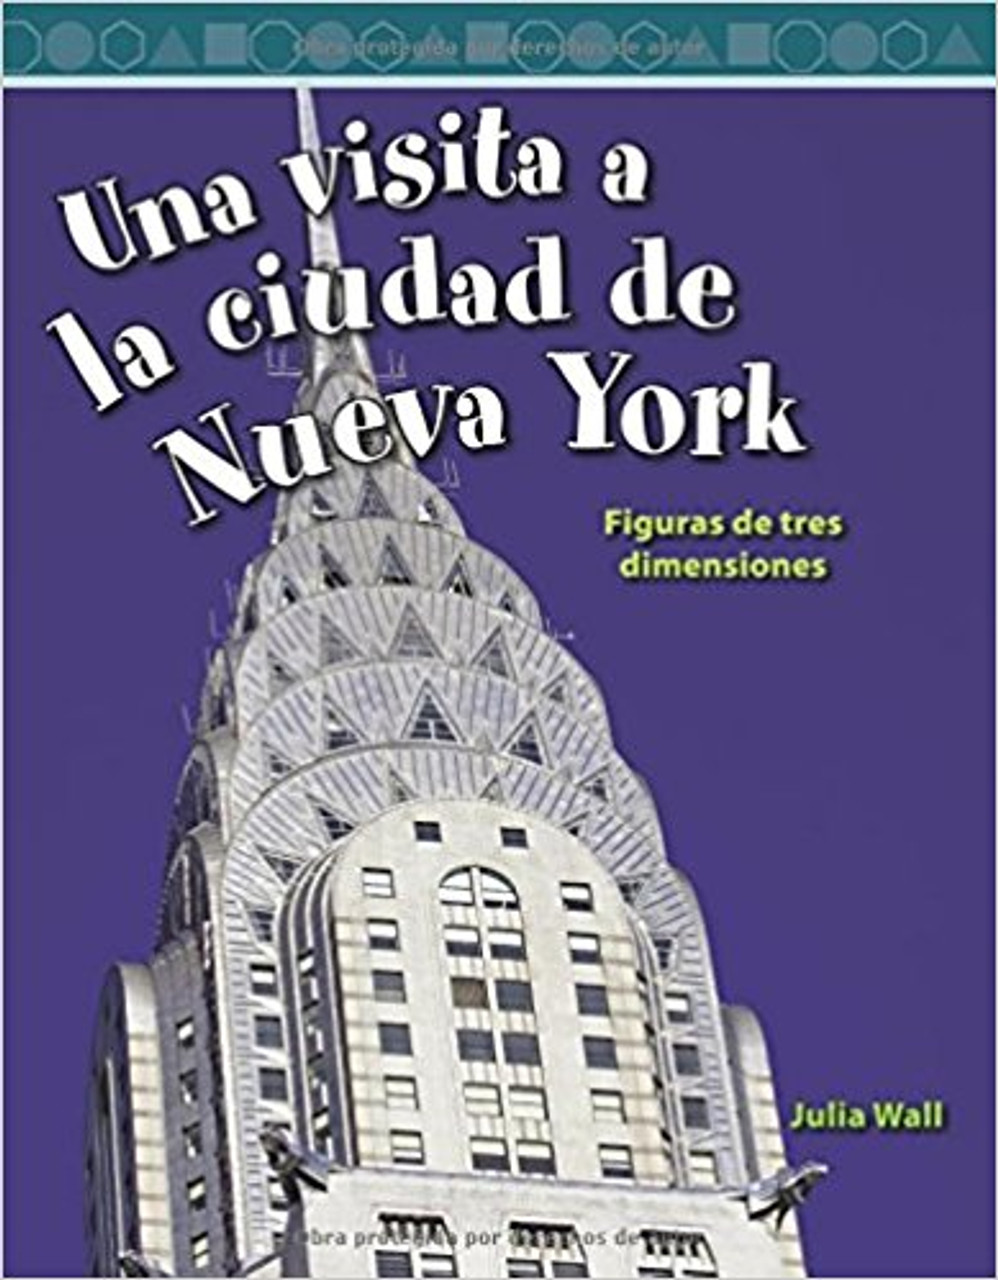 Una visita a la ciudad de Nueva York (A Tour of New York City) by Julia Wall